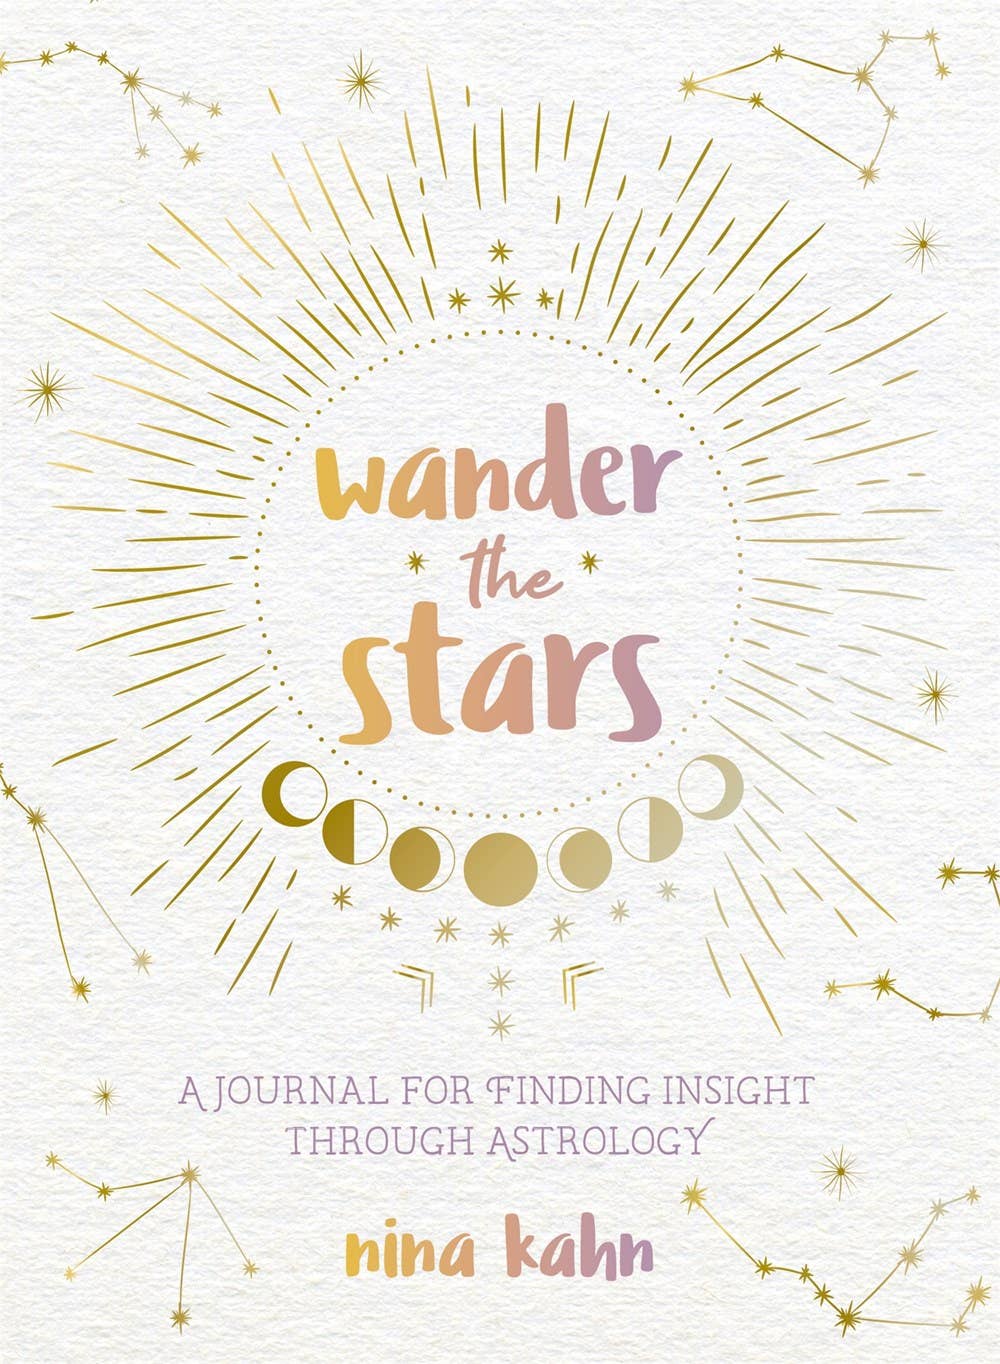 Promenez-vous dans les étoiles: Trouver un aperçu grâce à l'astrologie Journal